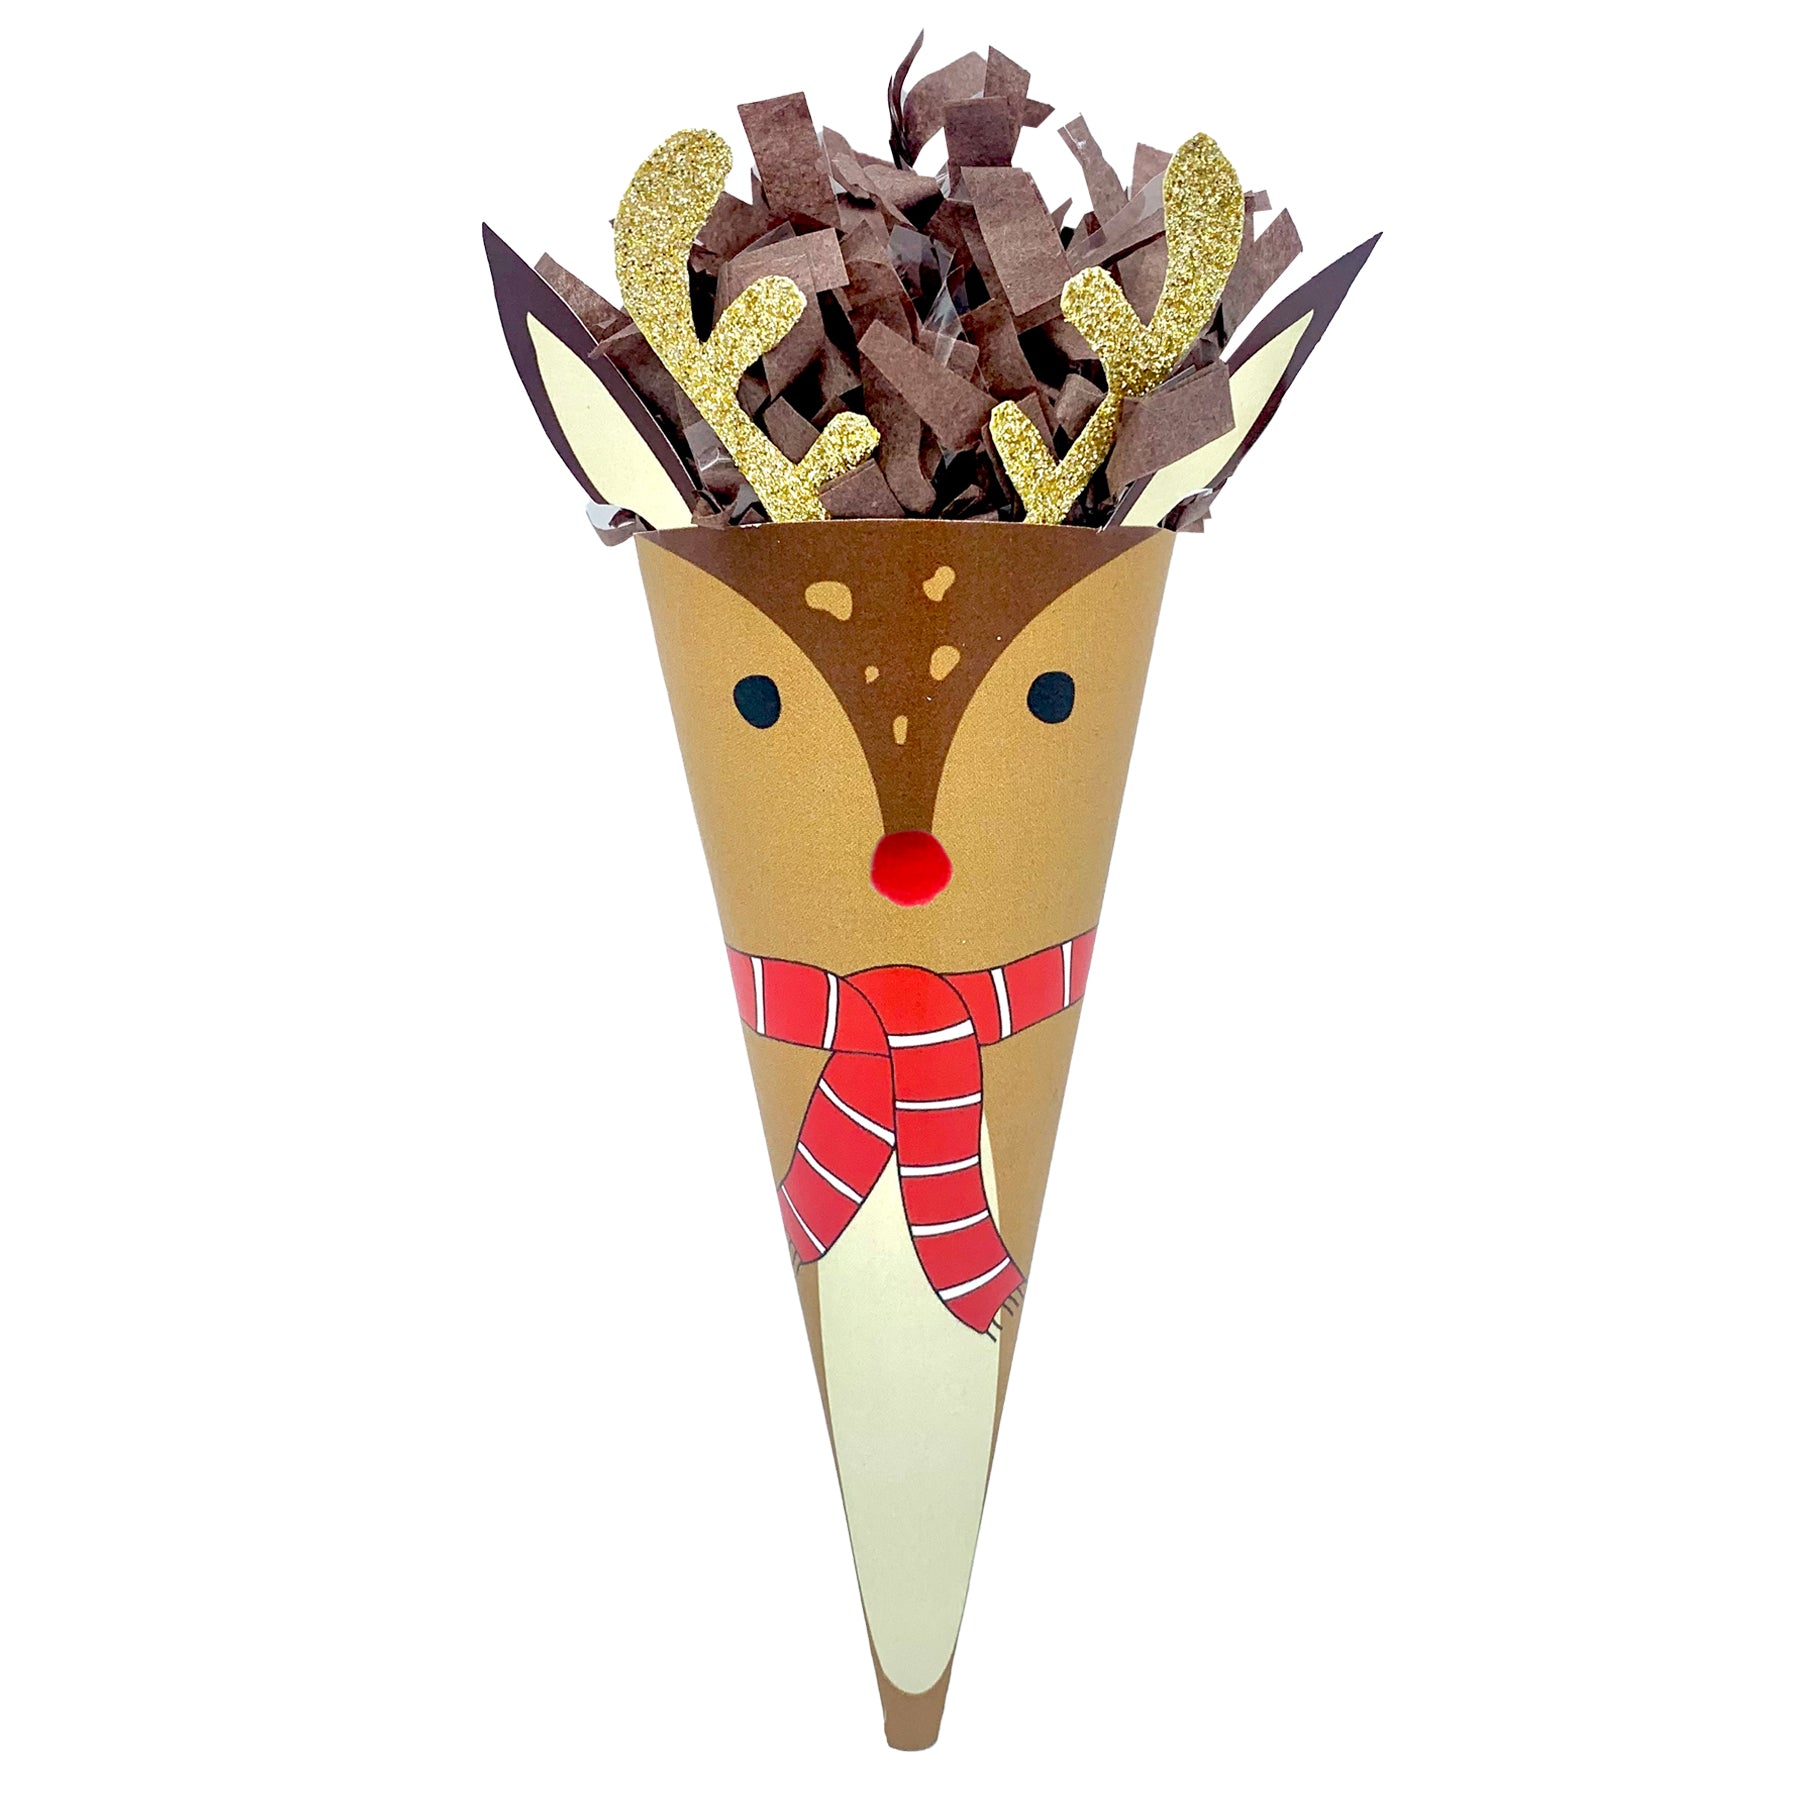 Mini Ice Cream Cone Surprise Ball - TOPS Malibu